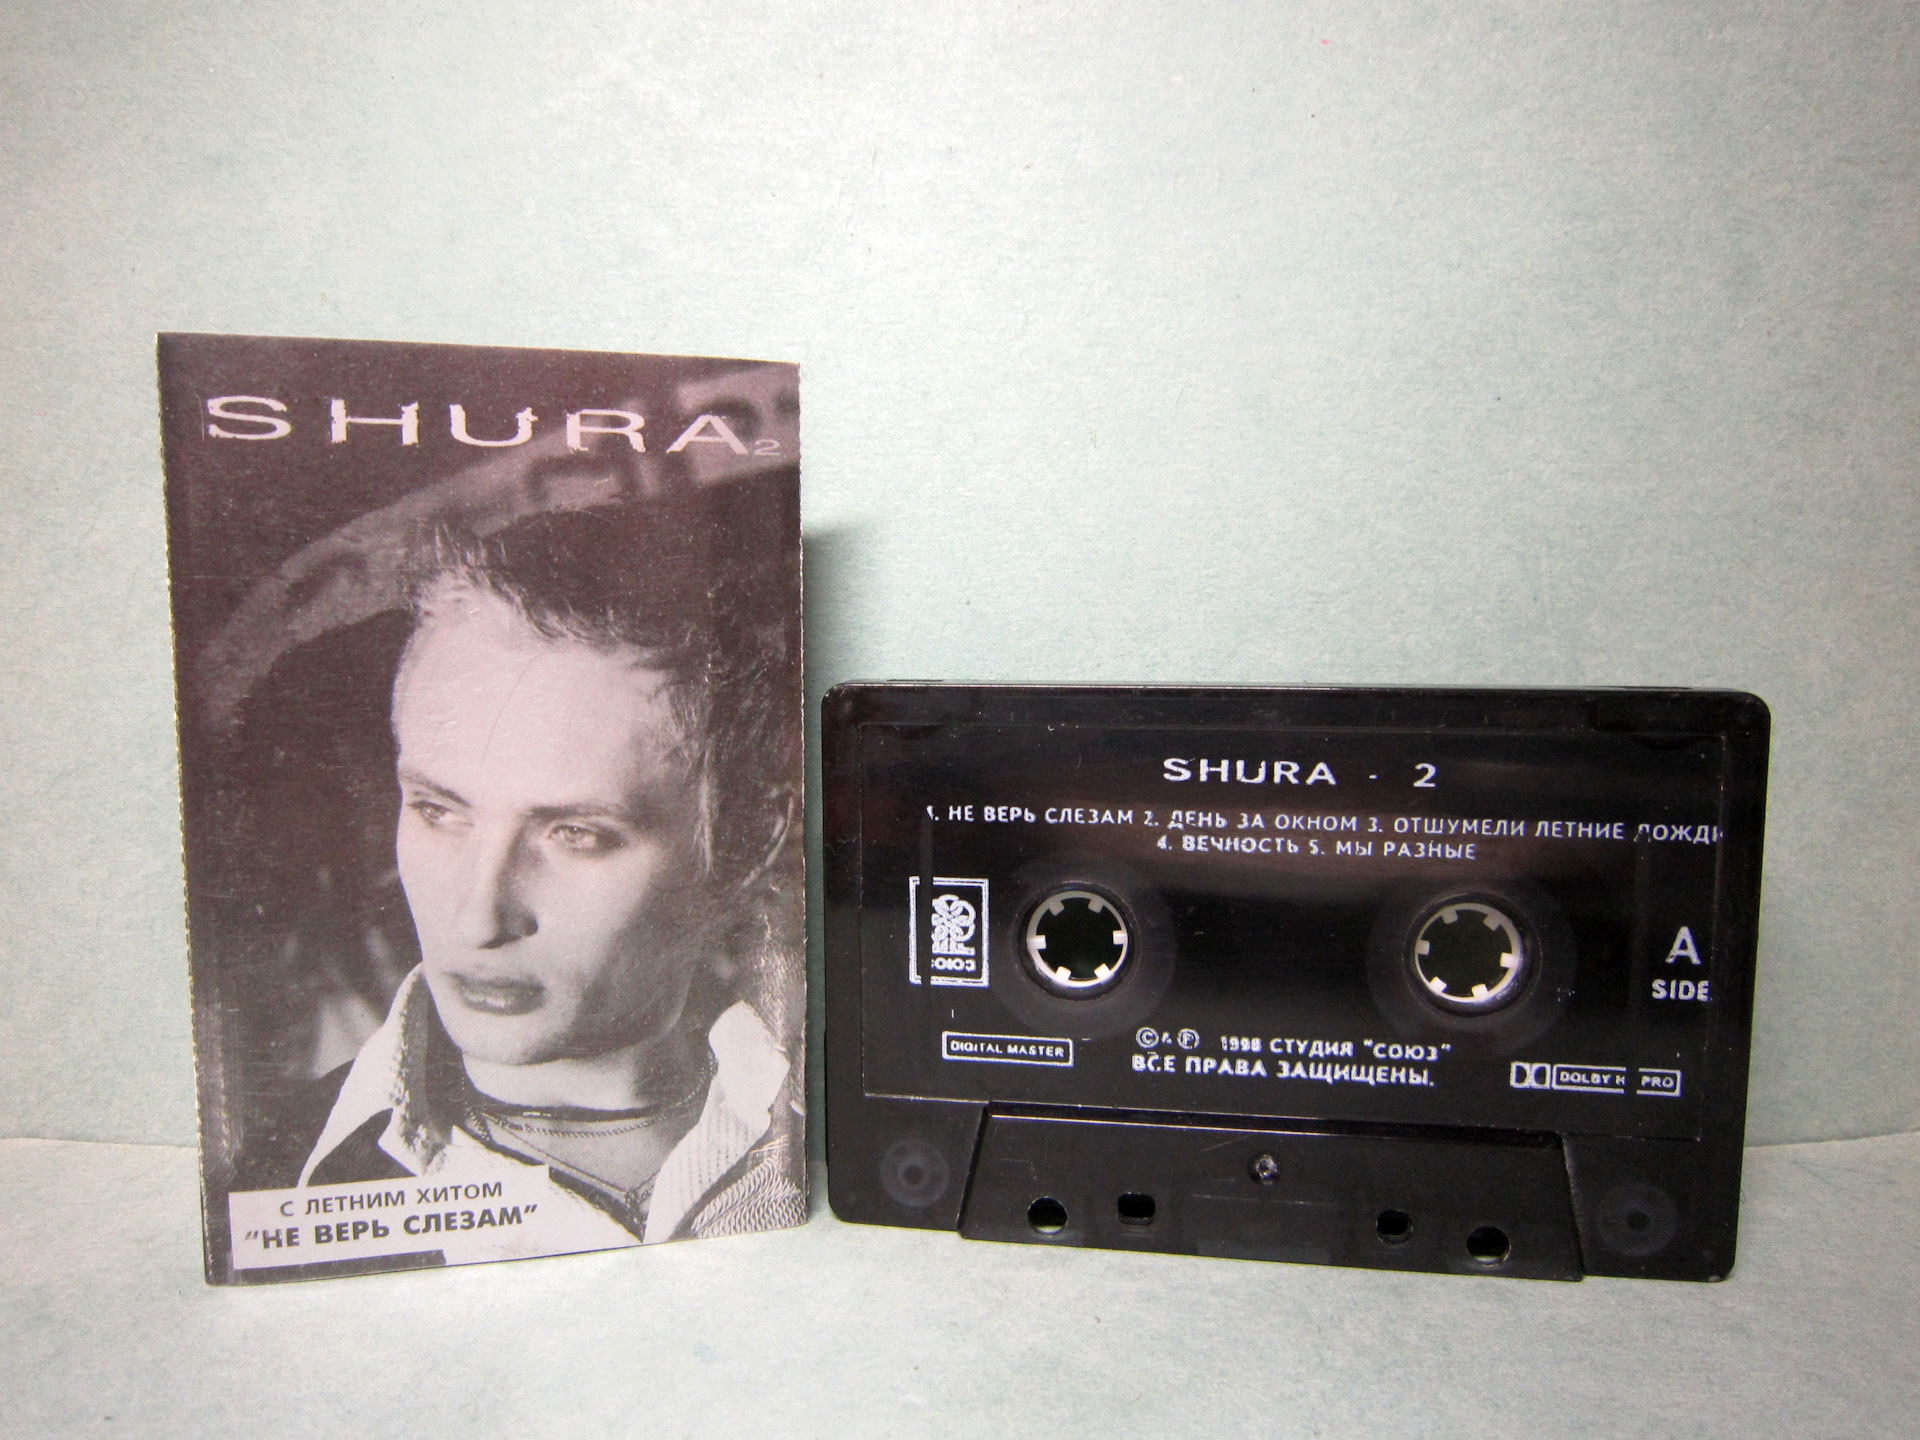 Ты не верь слезам кто поет. Shura 2 Шура кассета. Аудиокассеты Шура. Обложка аудиокассеты Шура. Первая кассета Шуры.